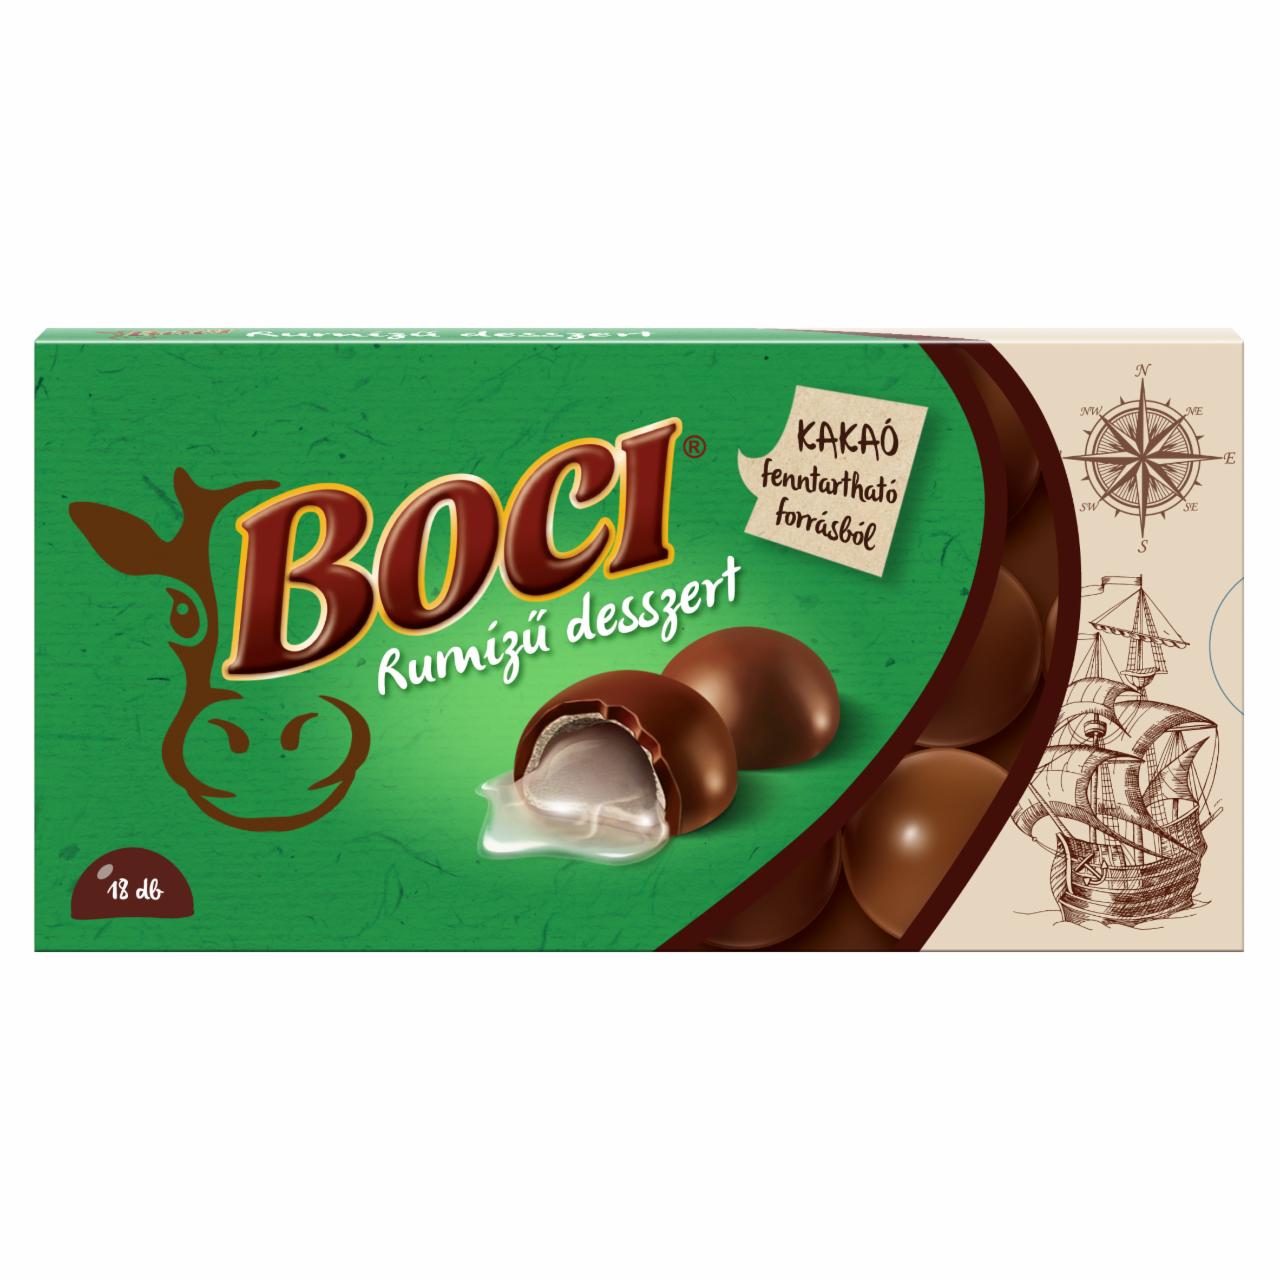 Képek - Boci rumízű desszert 144 g